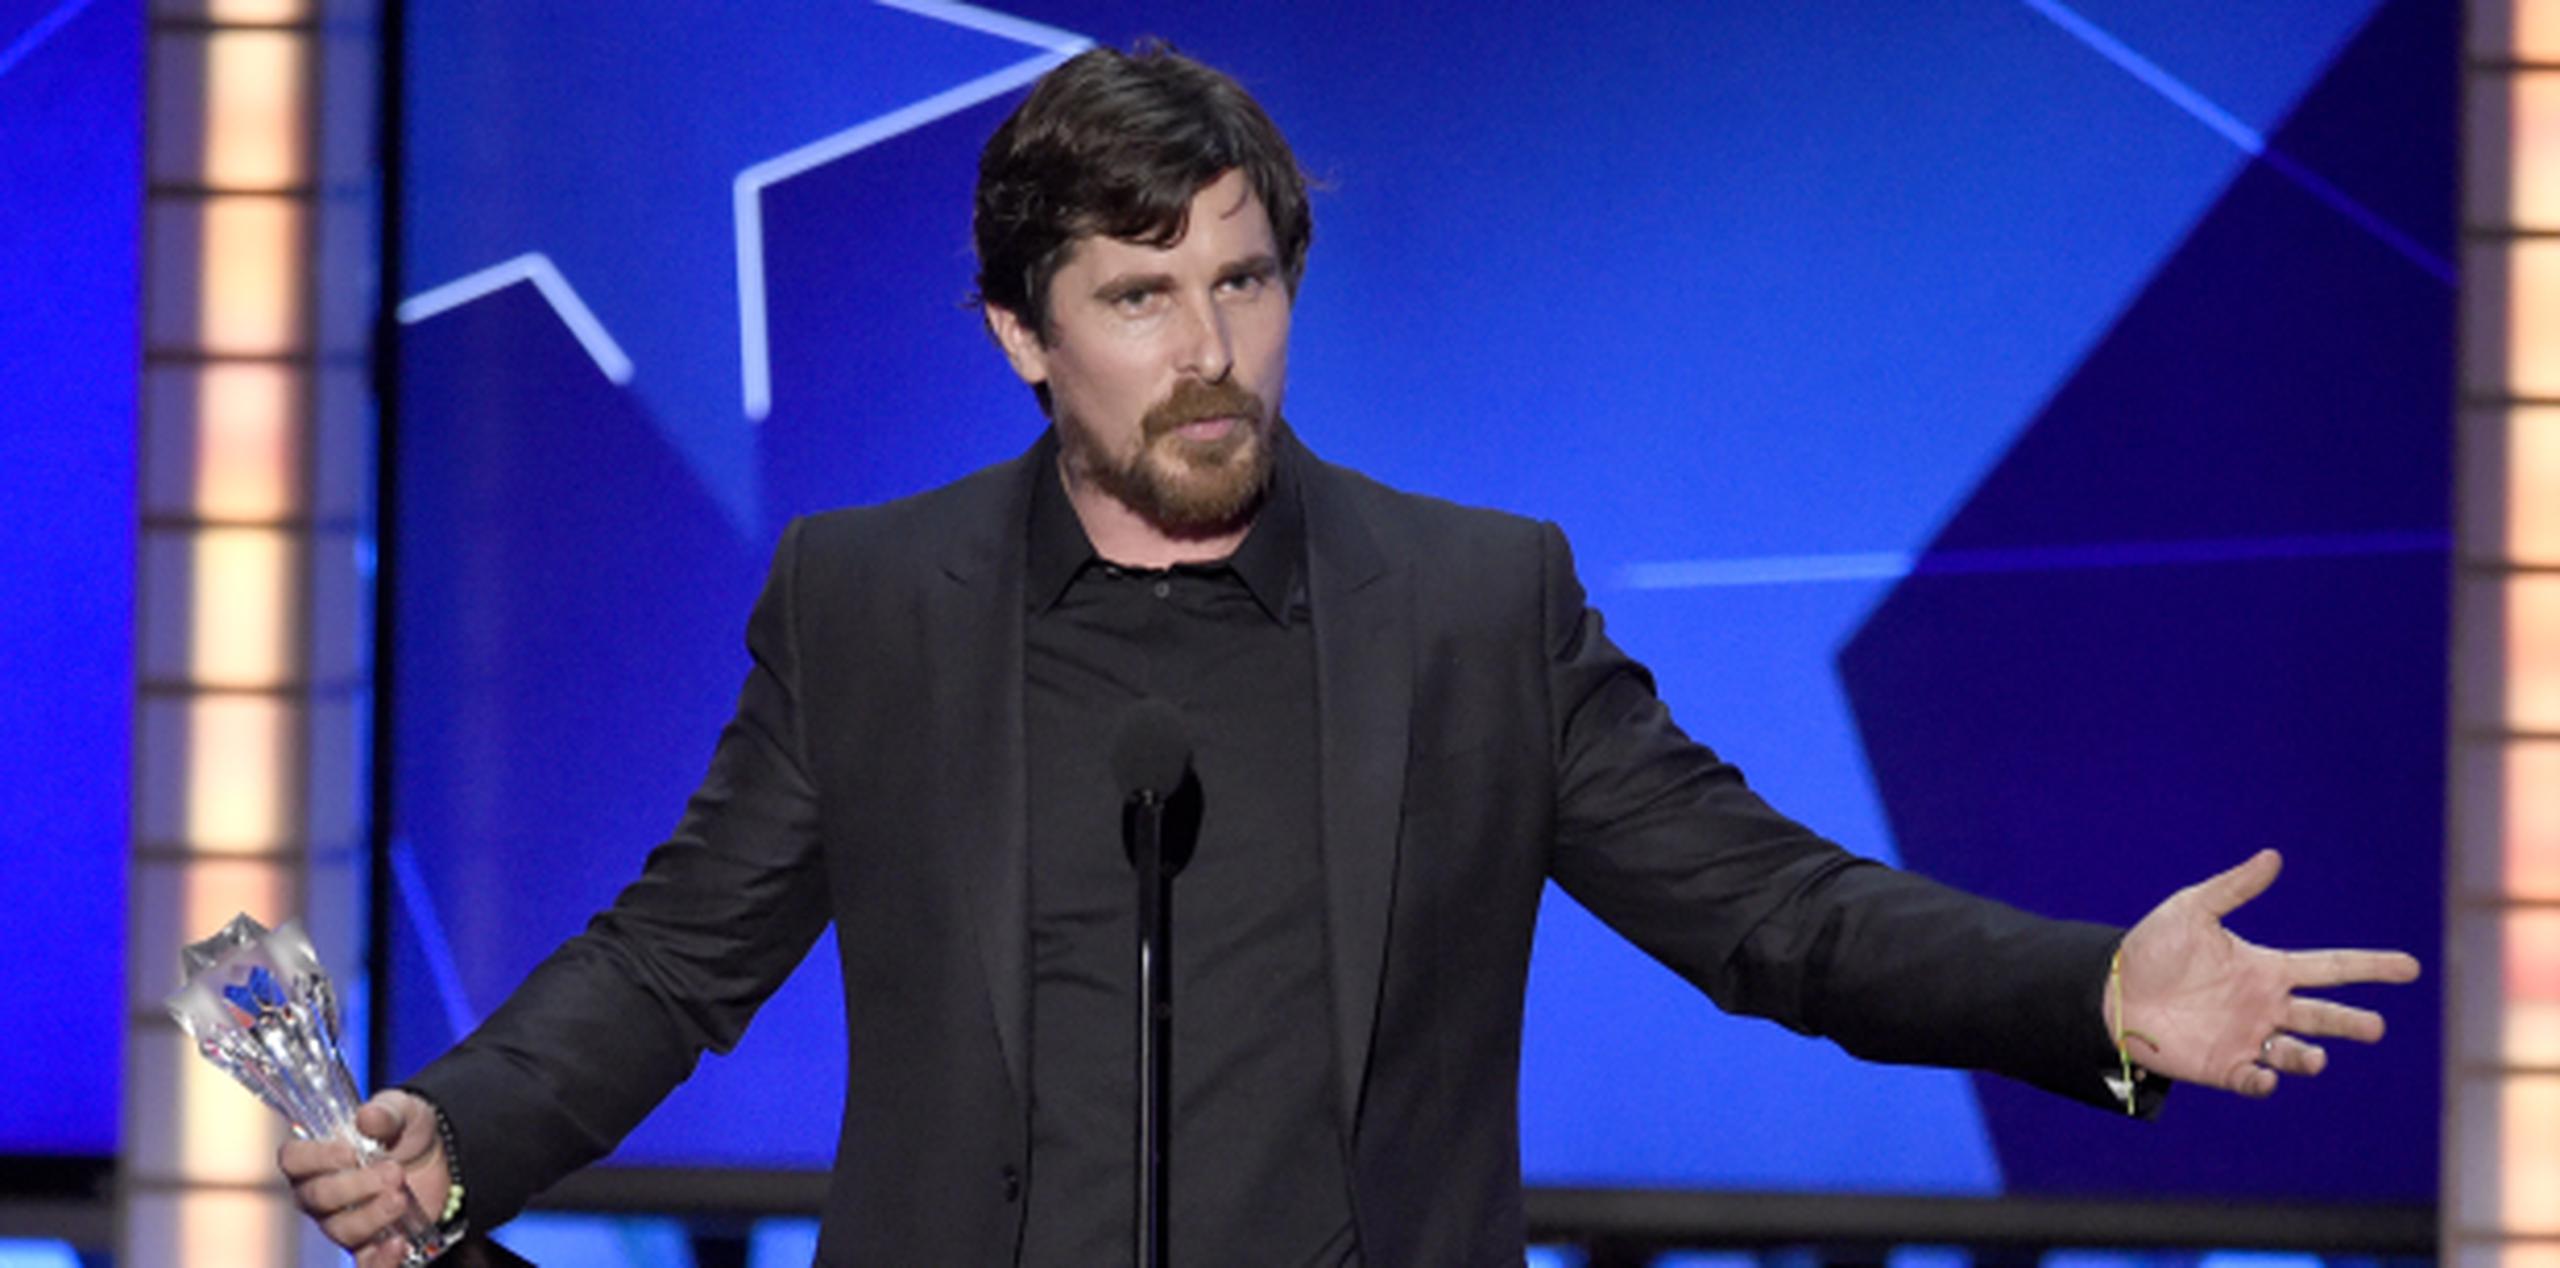 Christian Bale actúa en The Big Short, premiada tras una semana de debate en Hollywood luego de dos años consecutivos de nominaciones al Oscar solo para actores blancos. (AP)